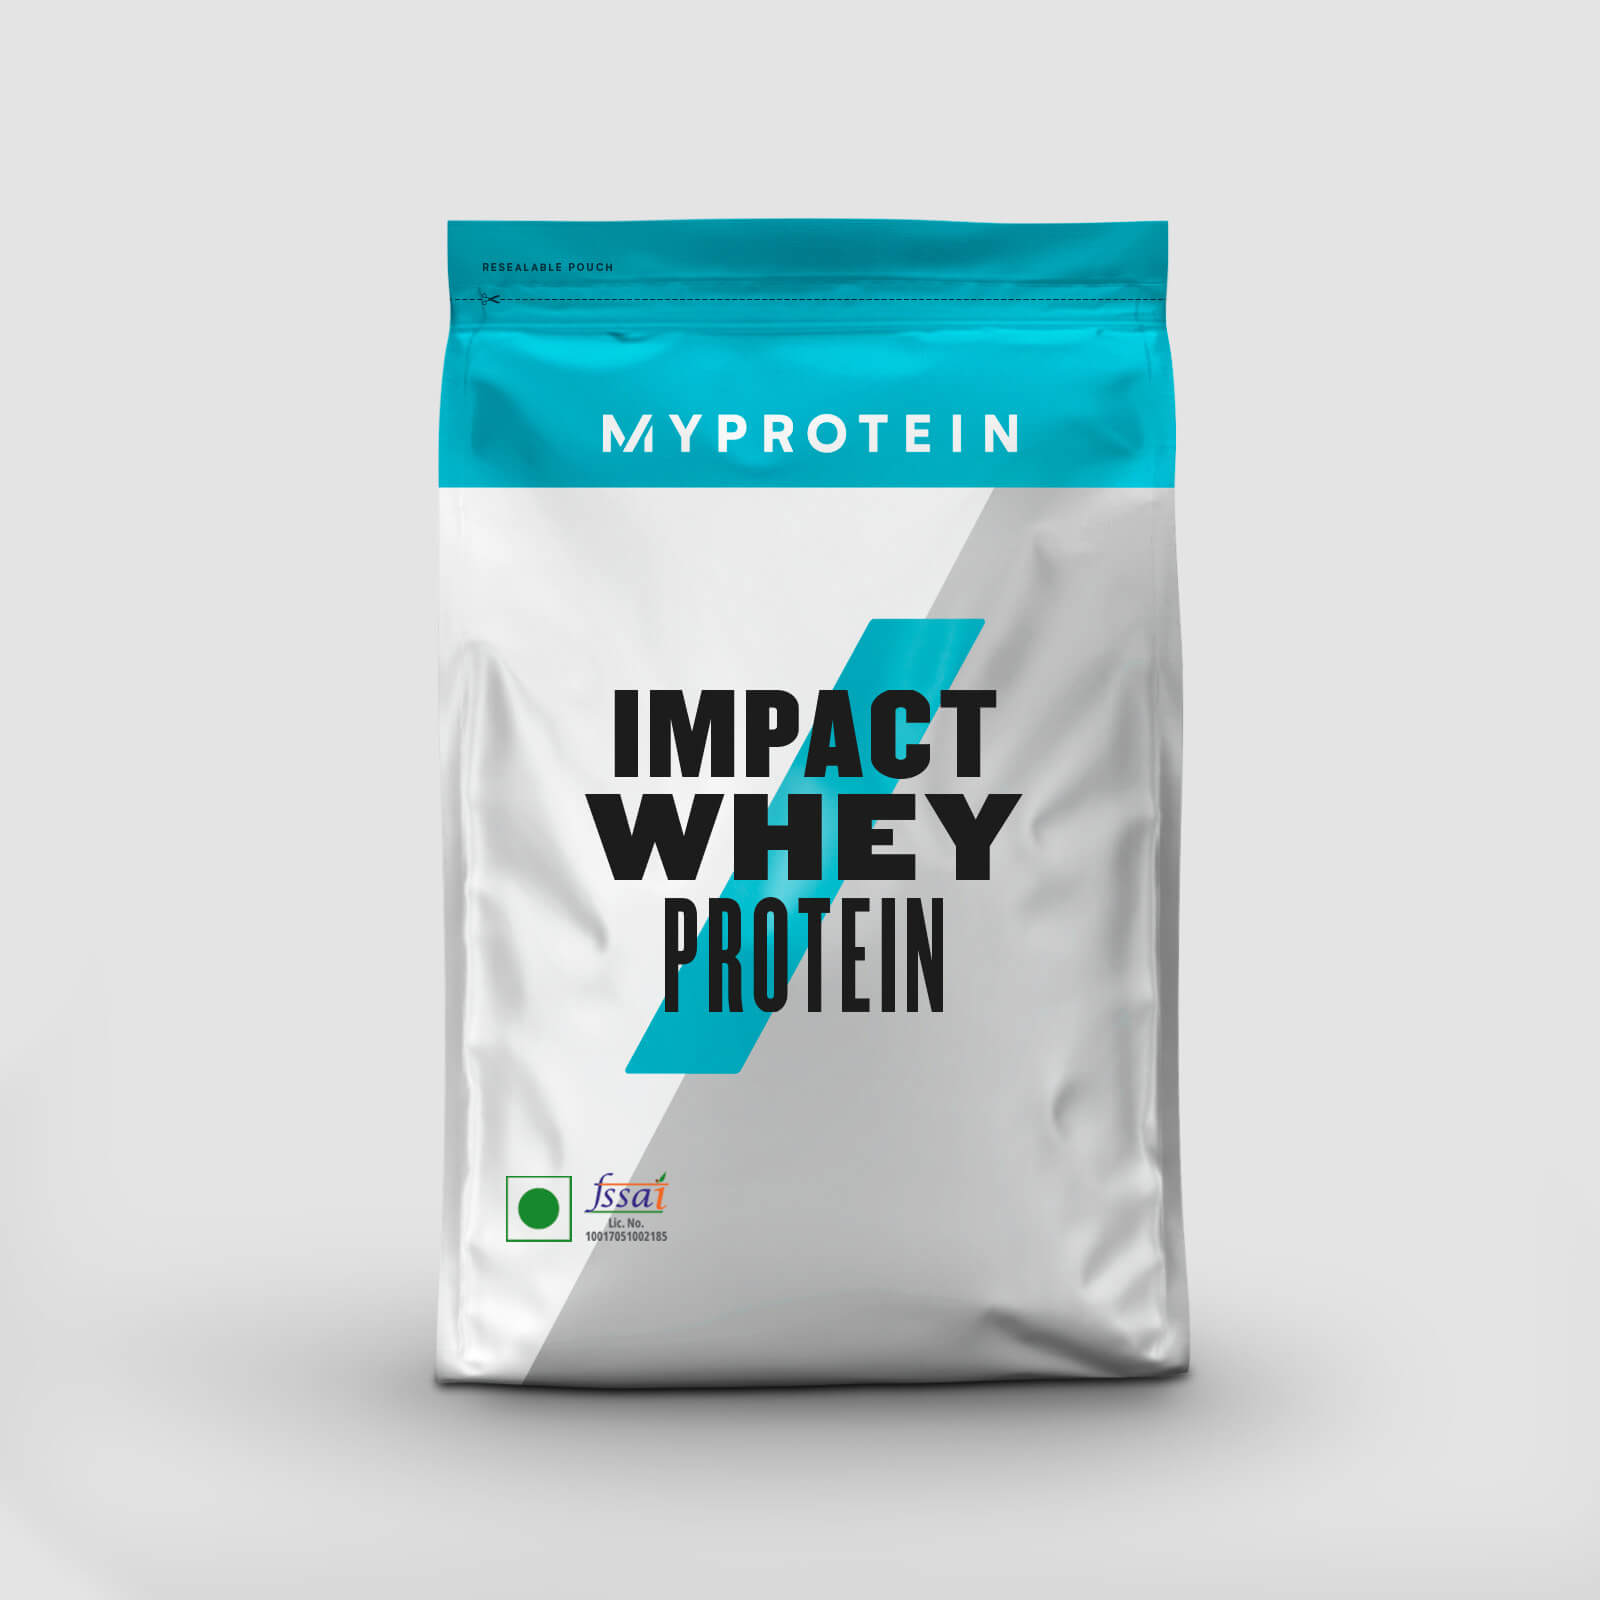 Impact Whey Protein - 250g - Kulfi